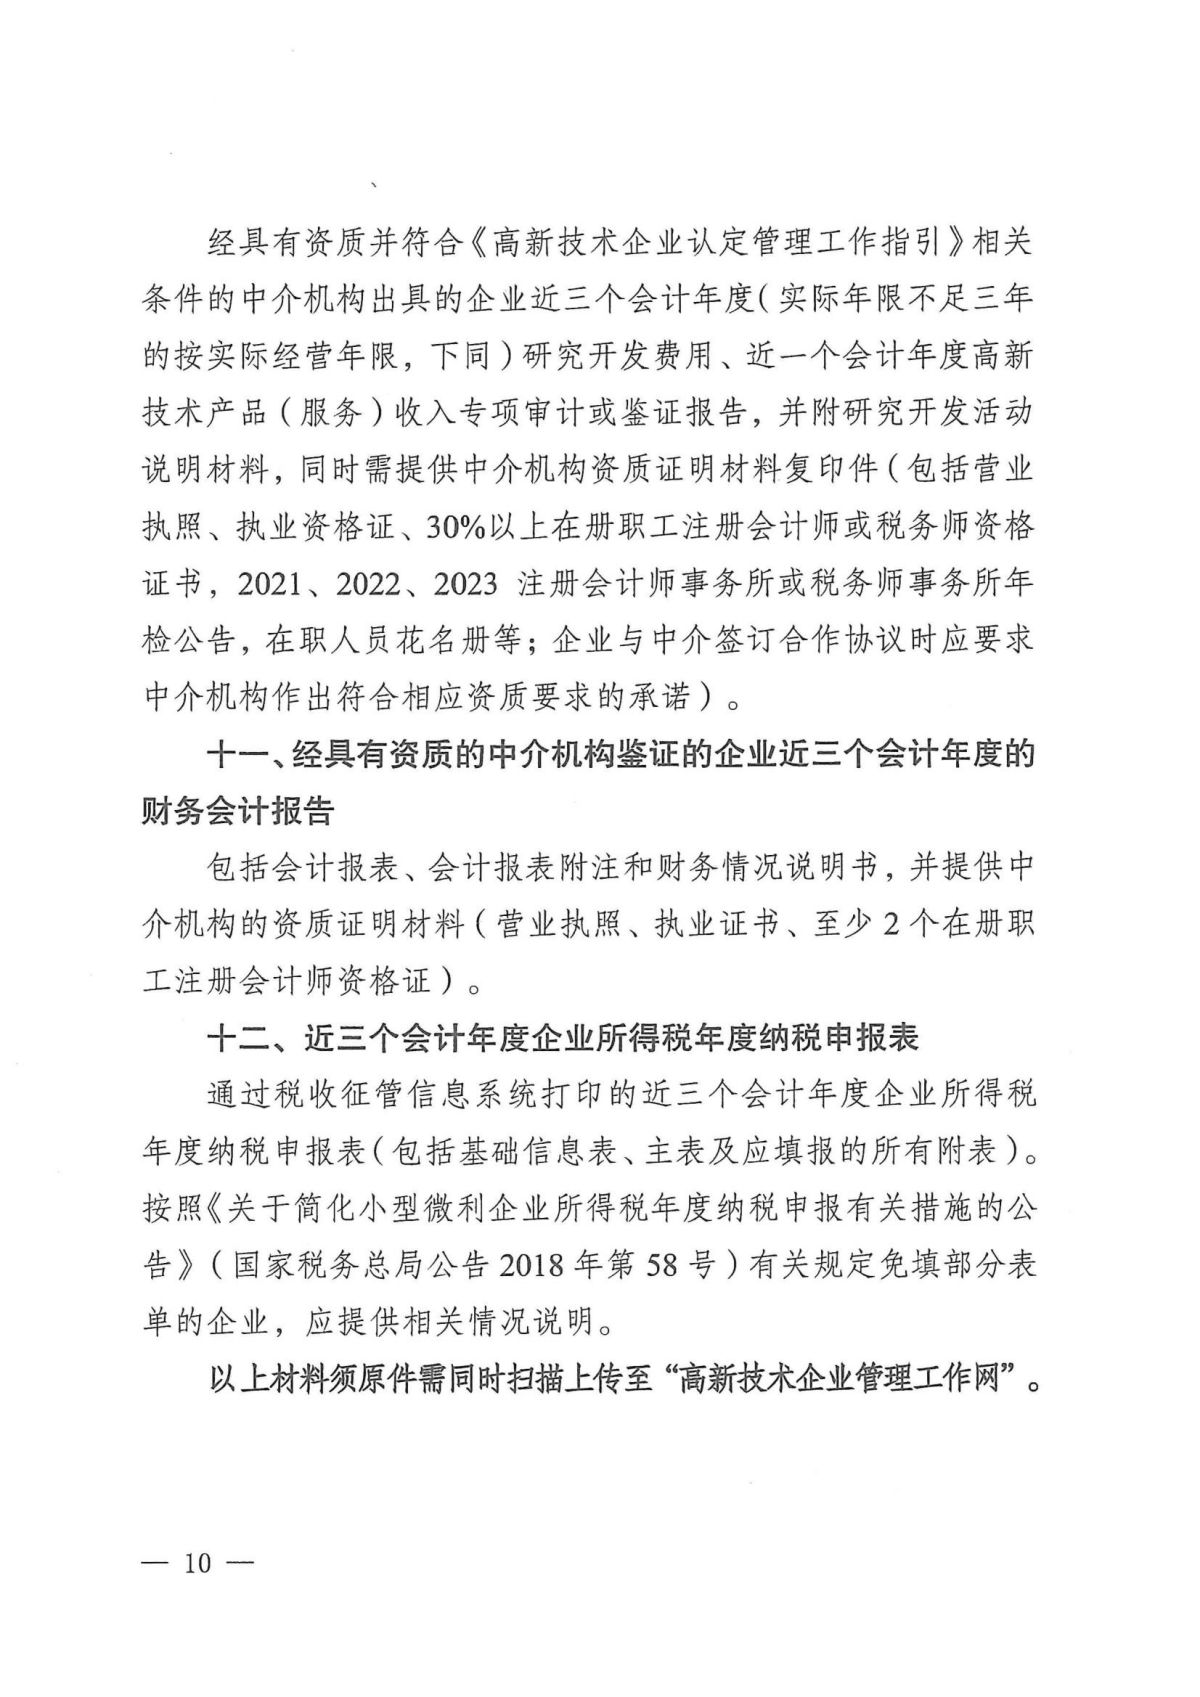 附件1：关于云南省2024年高新技术企业培育认定工作有关事项的通知_09.jpg